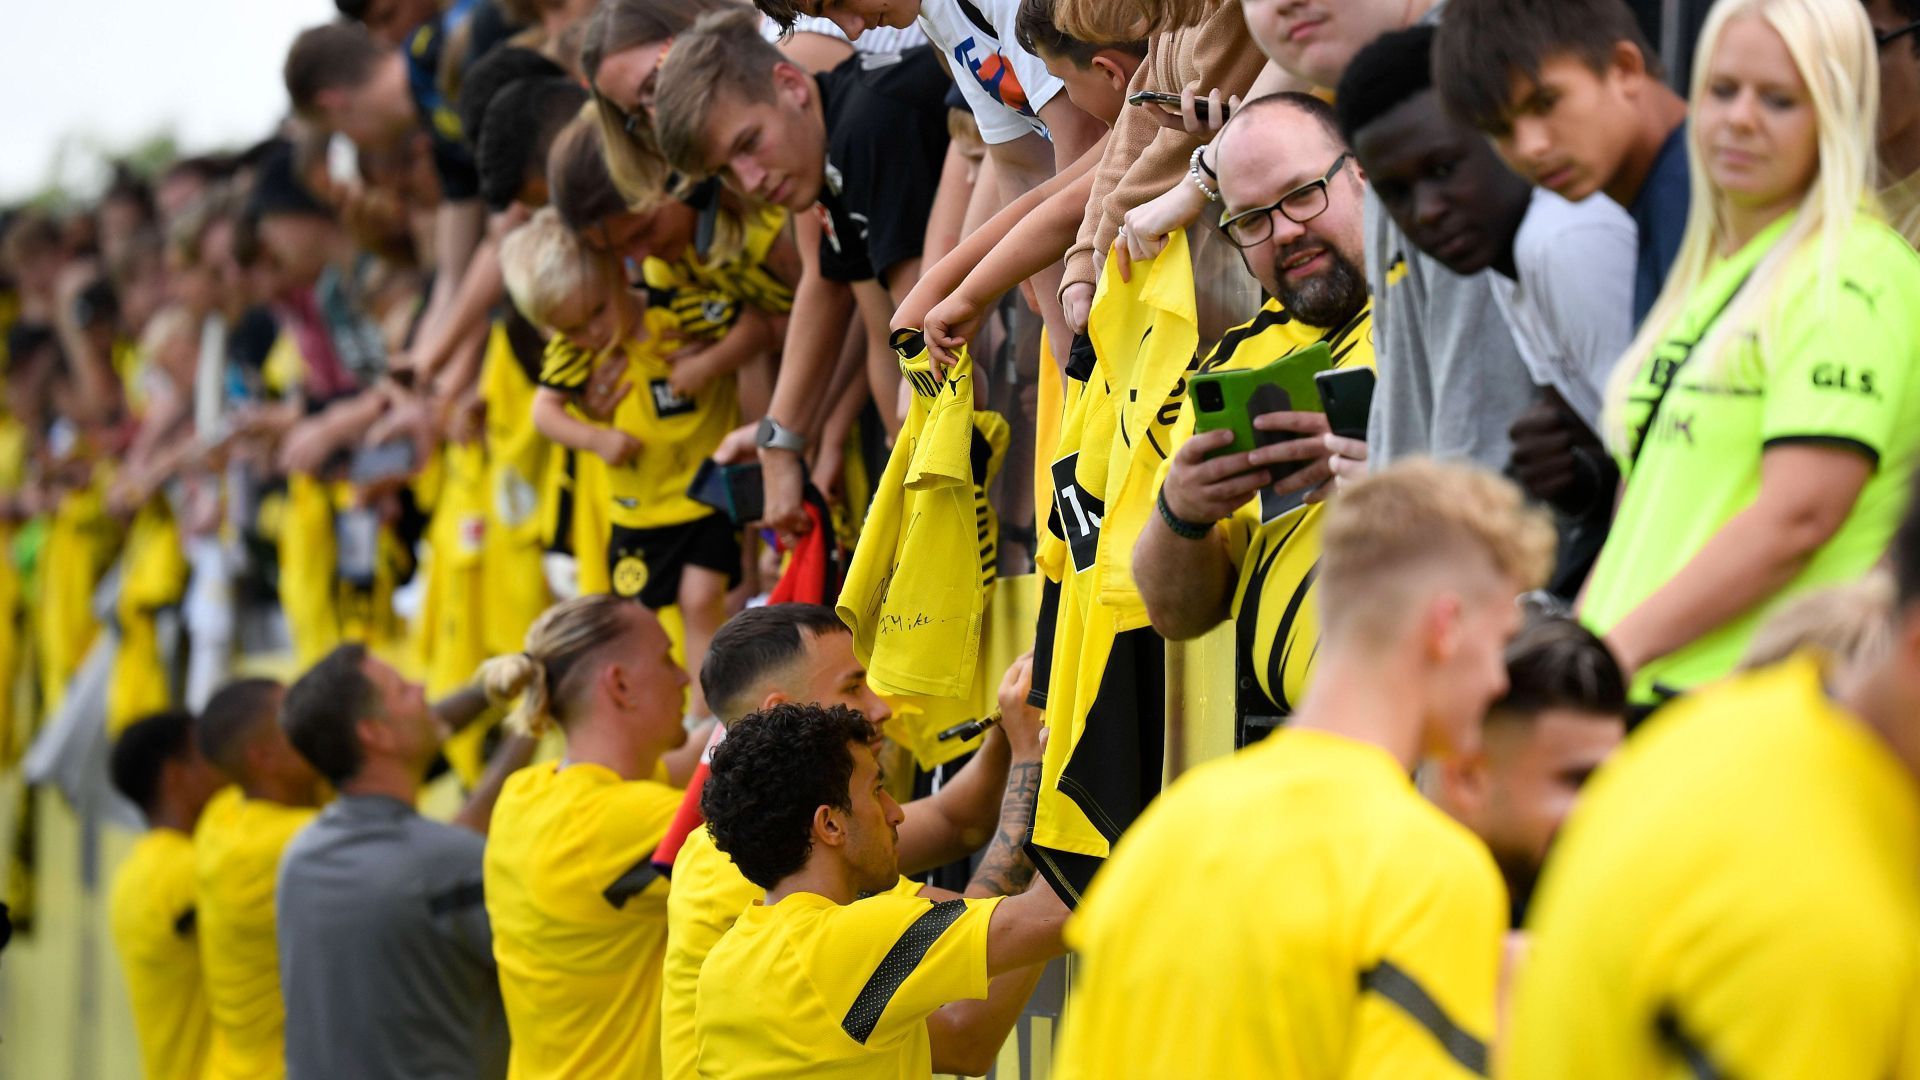 
                <strong>Der Trainingsauftakt von Borussia Dortmund</strong><br>
                Nach der Trainingseinheit suchen die Spieler den Kontakt zu den Fans. Die wiederum können sich über begehrte Autogramme ihrer Idole freuen.
              